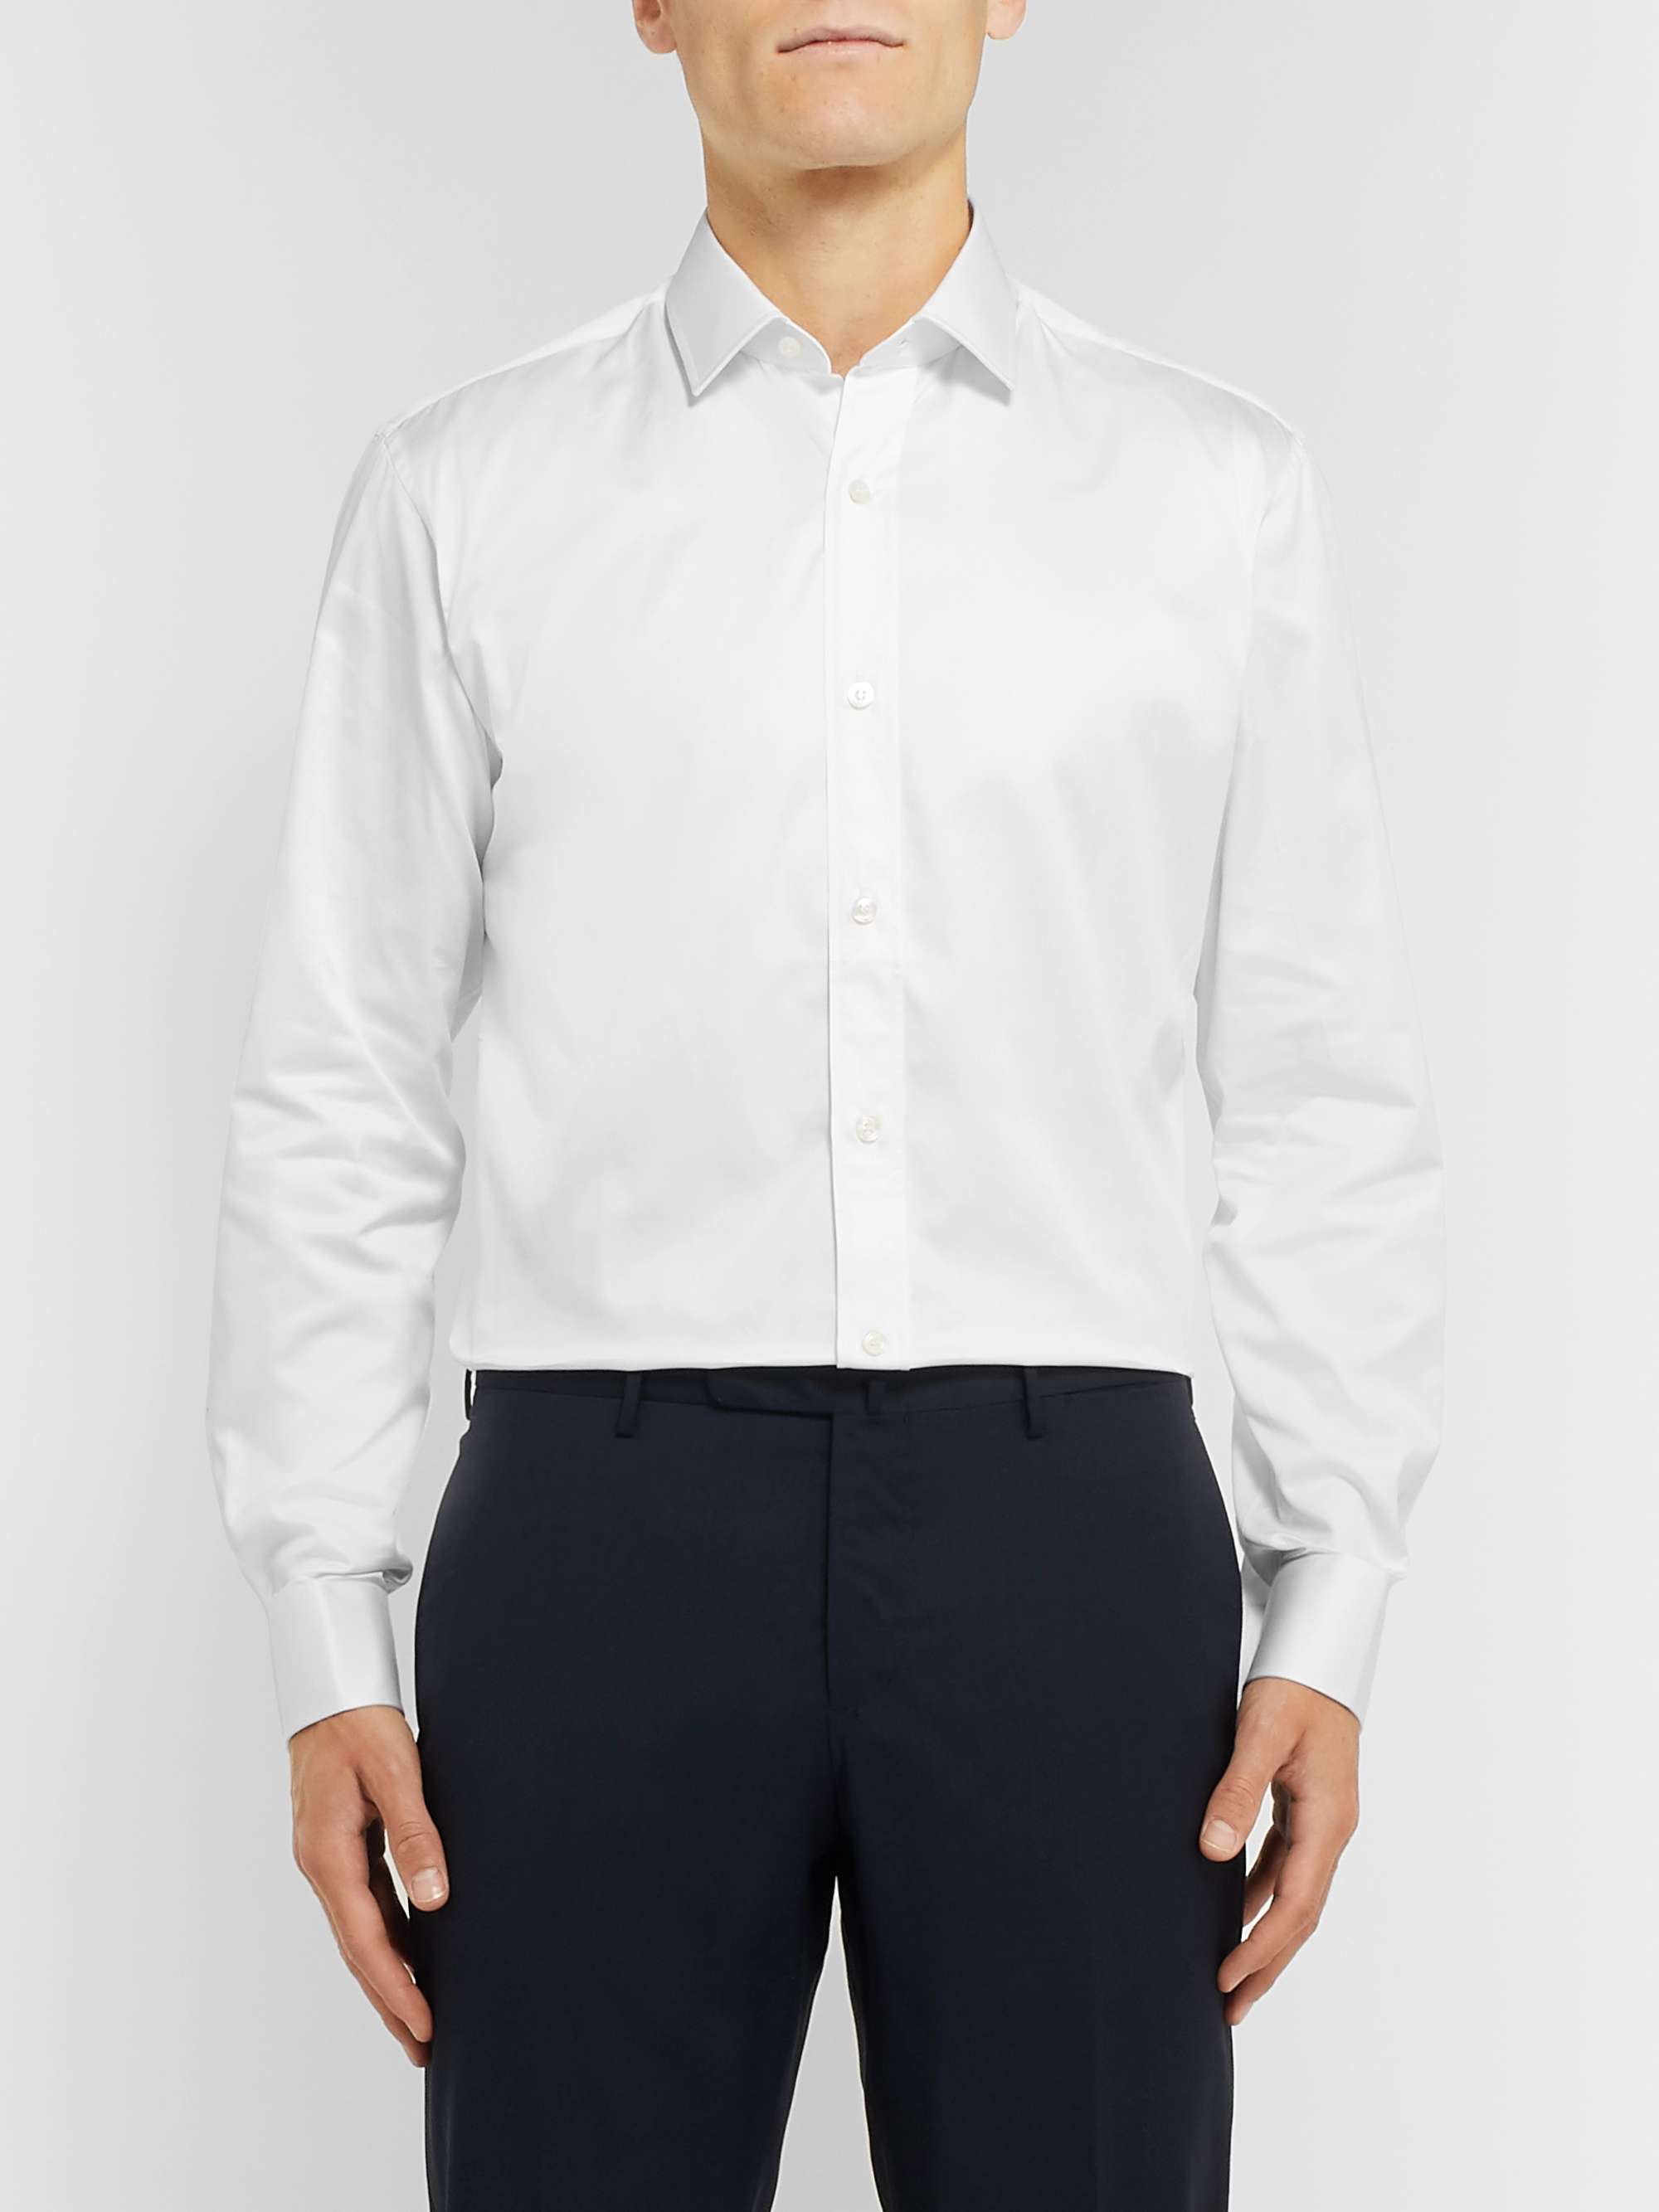 CHARVET White Cotton-Satin Shirt